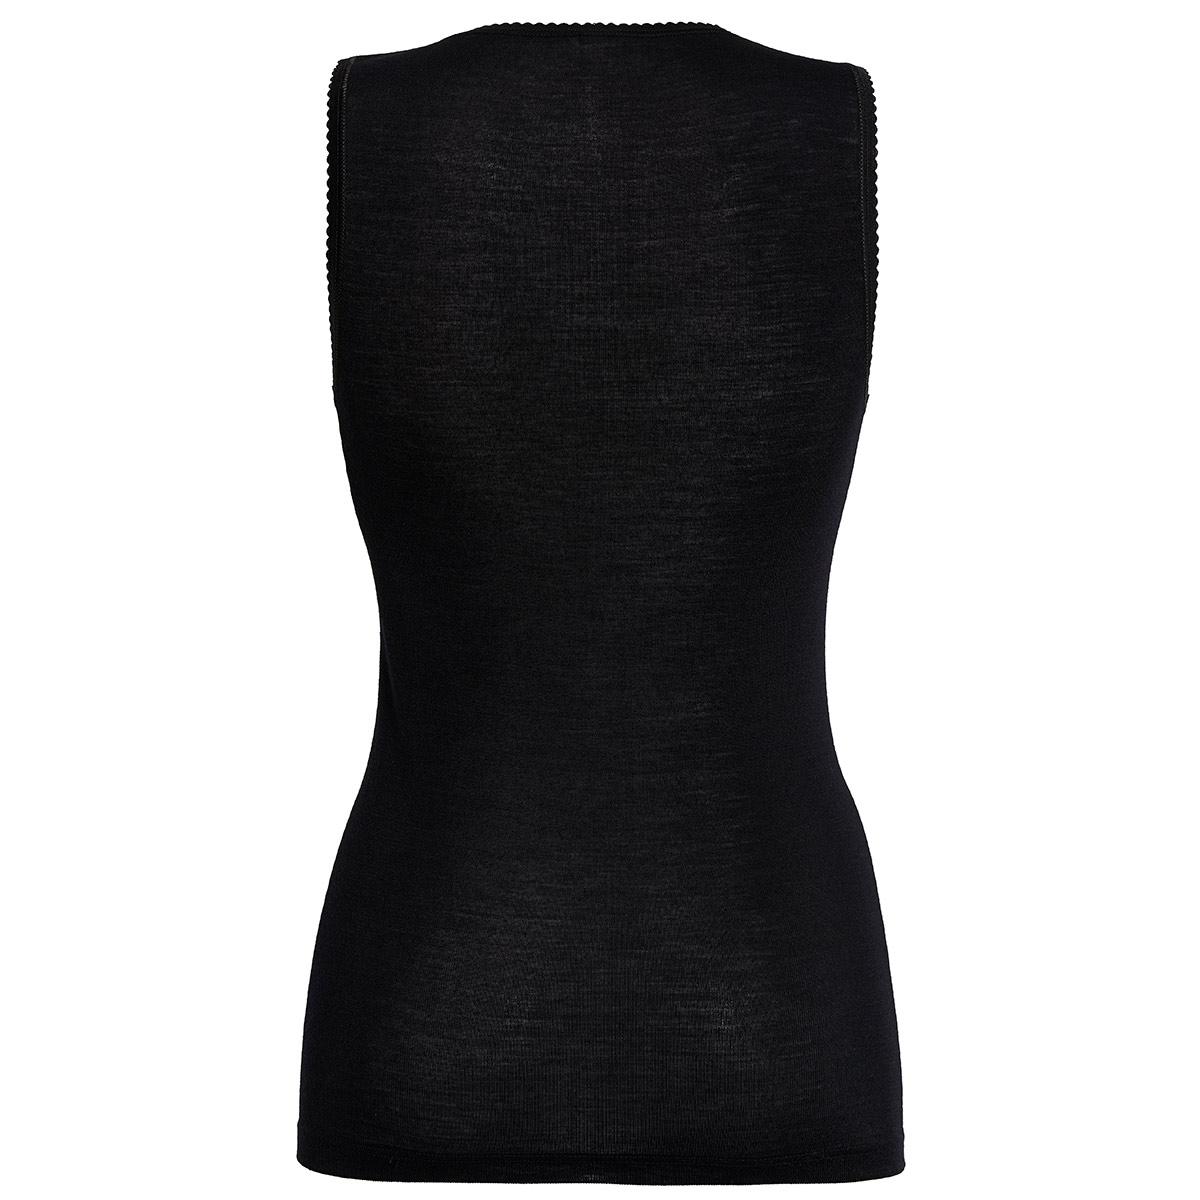 Susa Hemdchen mit Spitze Modell Sangora in schwarz in der Rückansicht